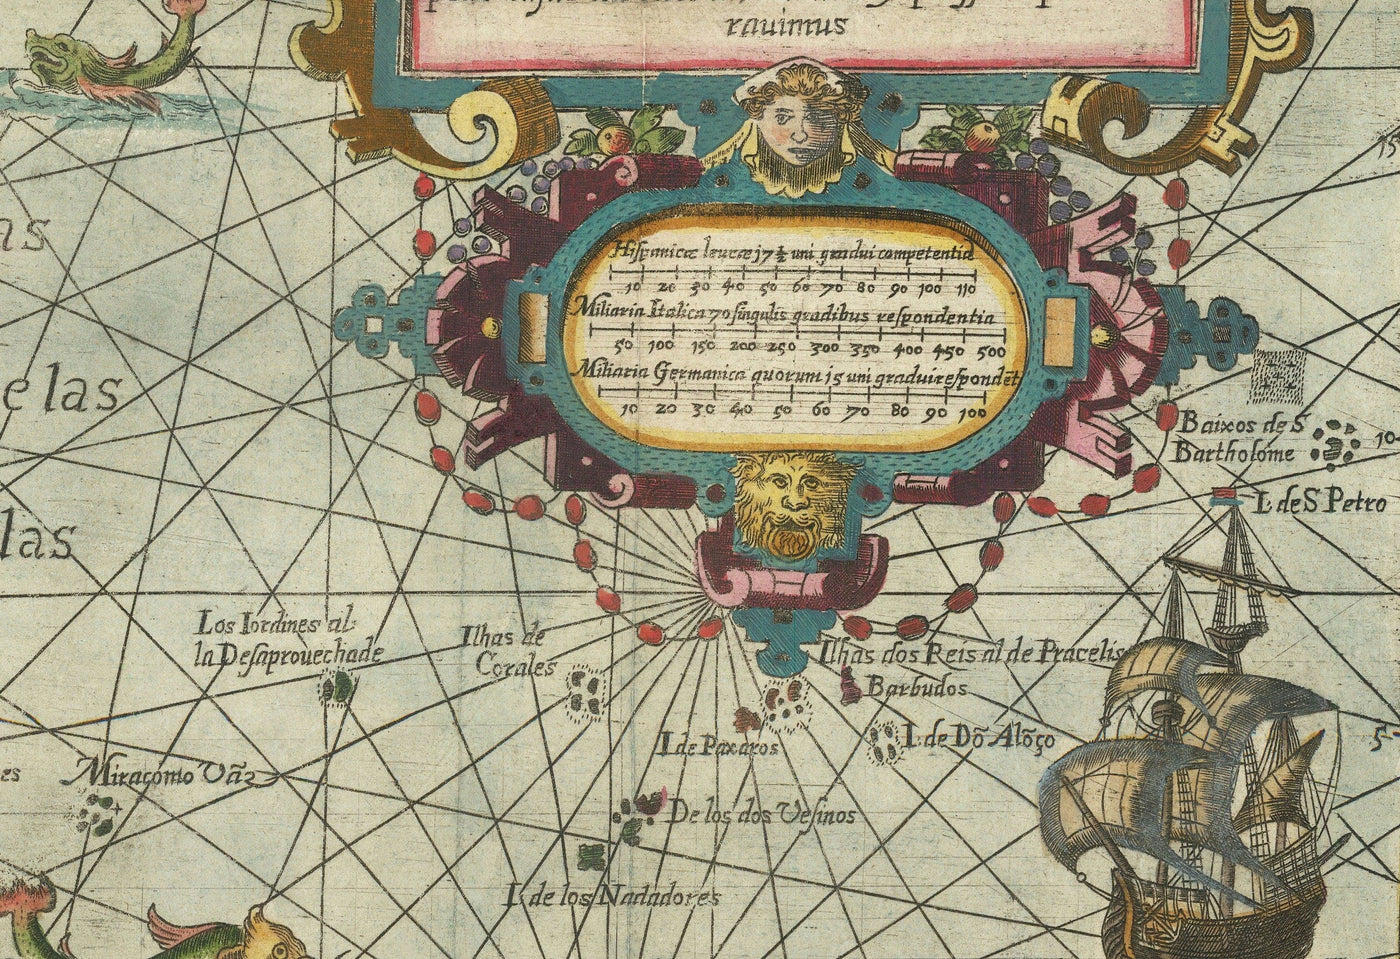 Alte Spice Isles Karte in Südostasien, 1598 von Wolfe - niederländische Ostindien - Indonesien, Borneo, Seemonster